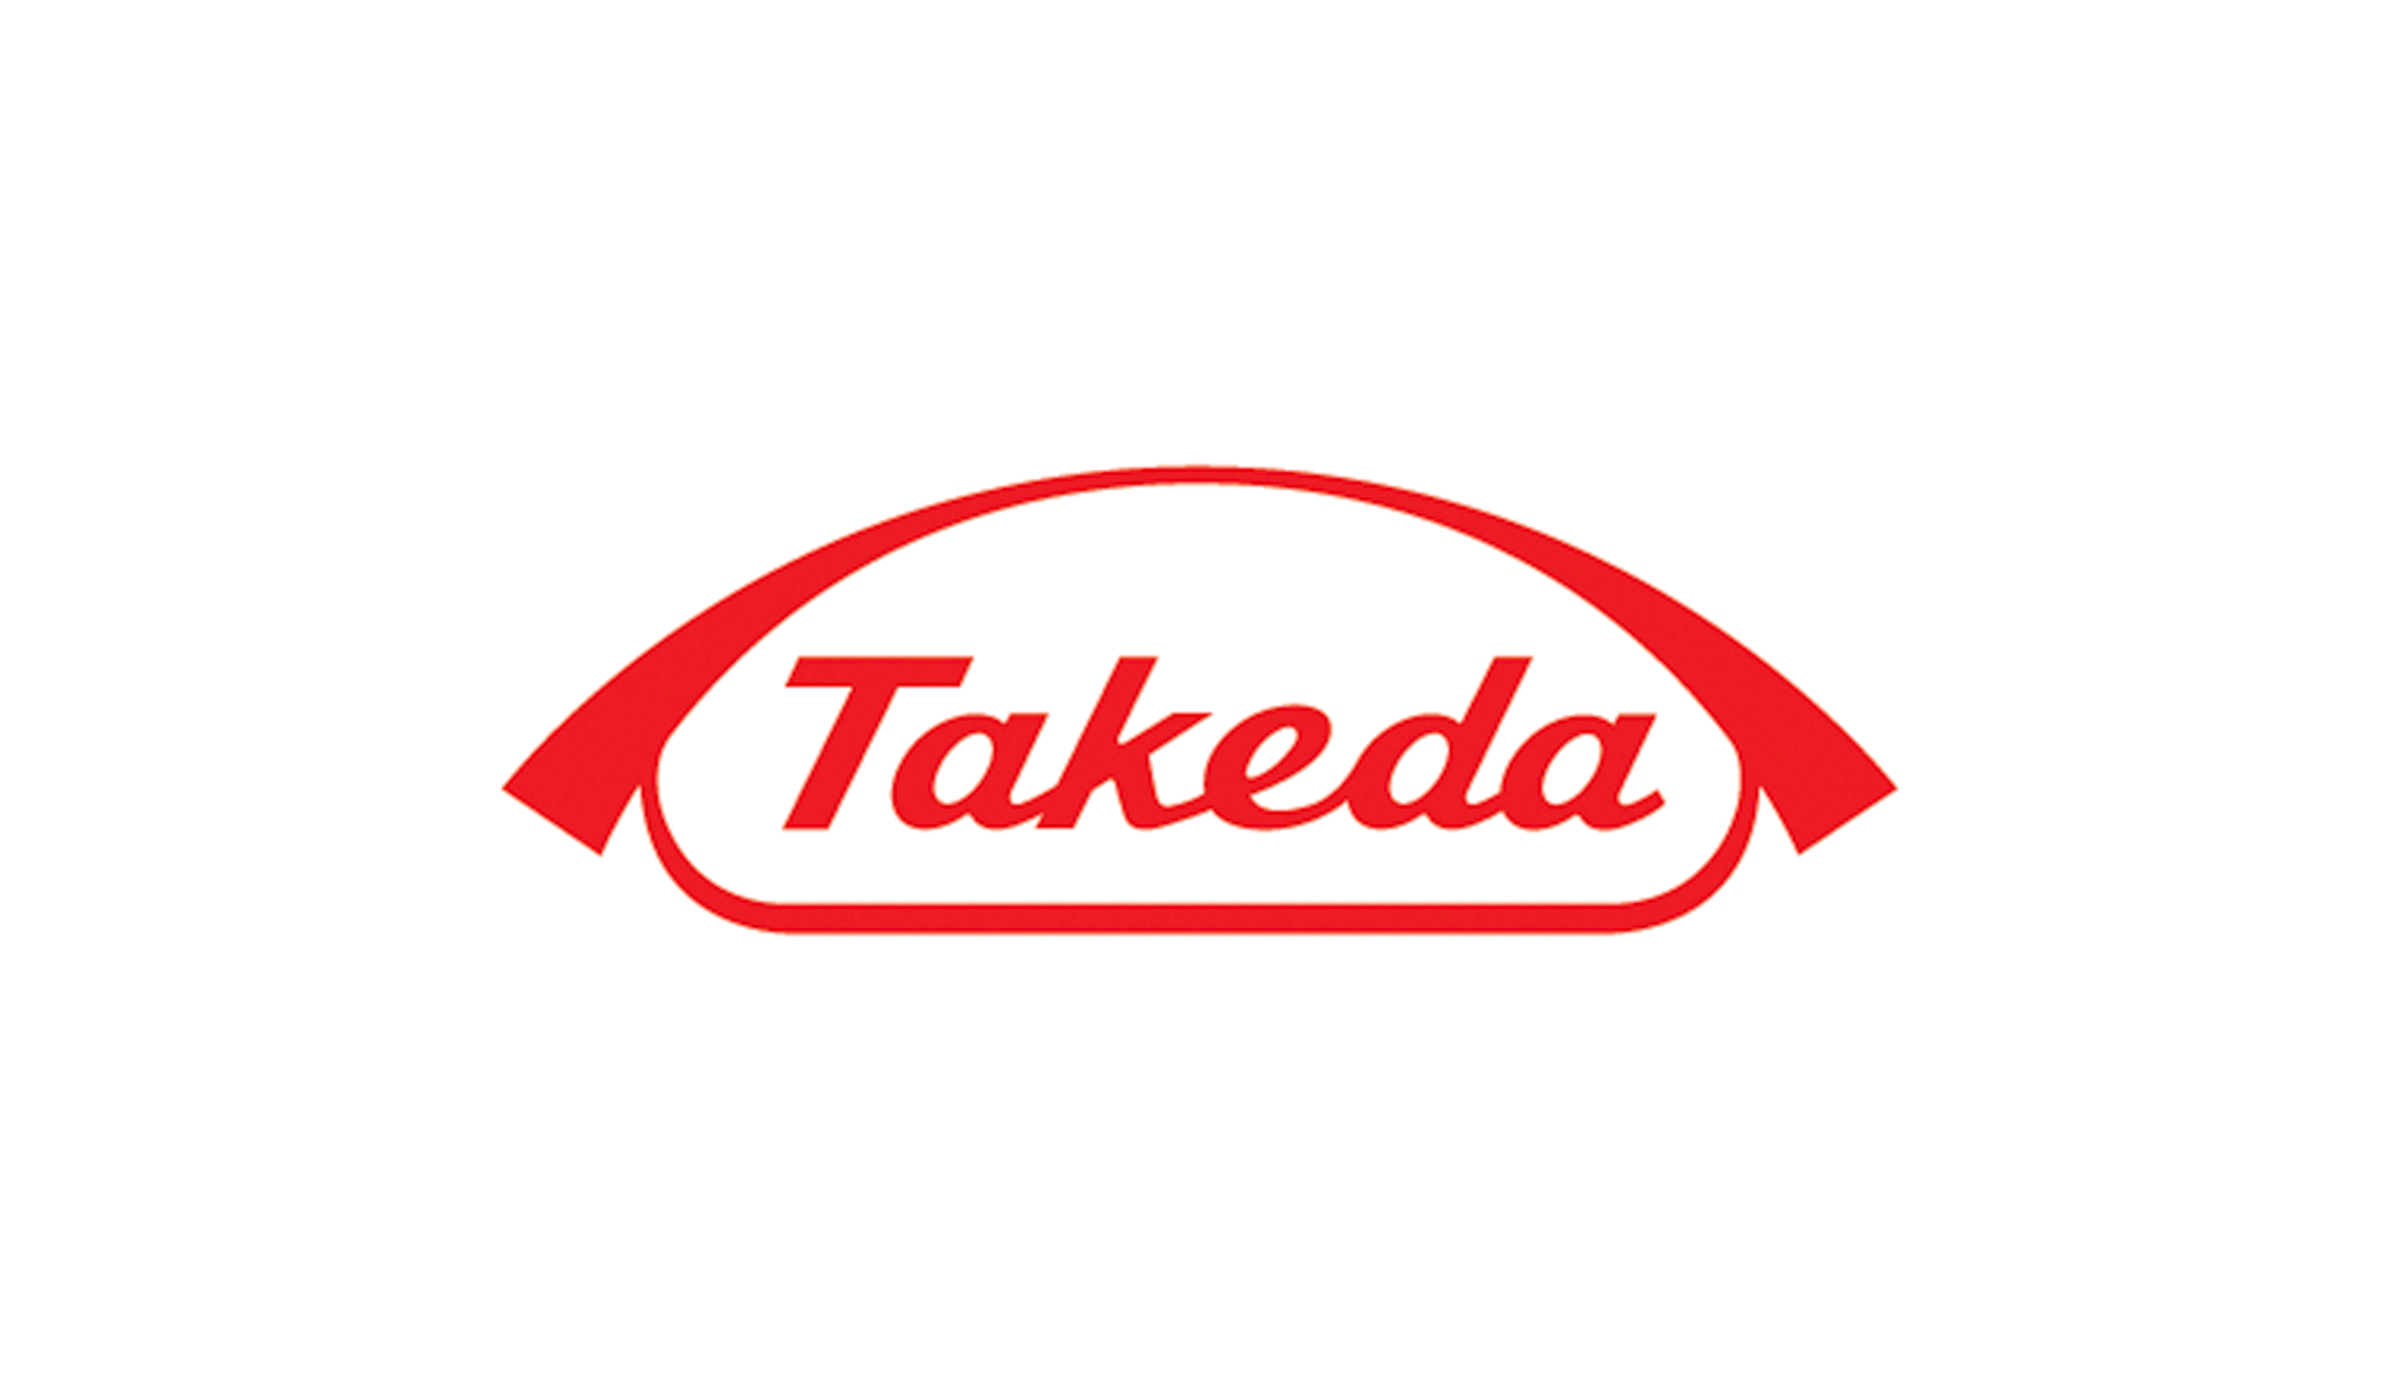 Takeda Sponsors the Pan-Mass Challenge